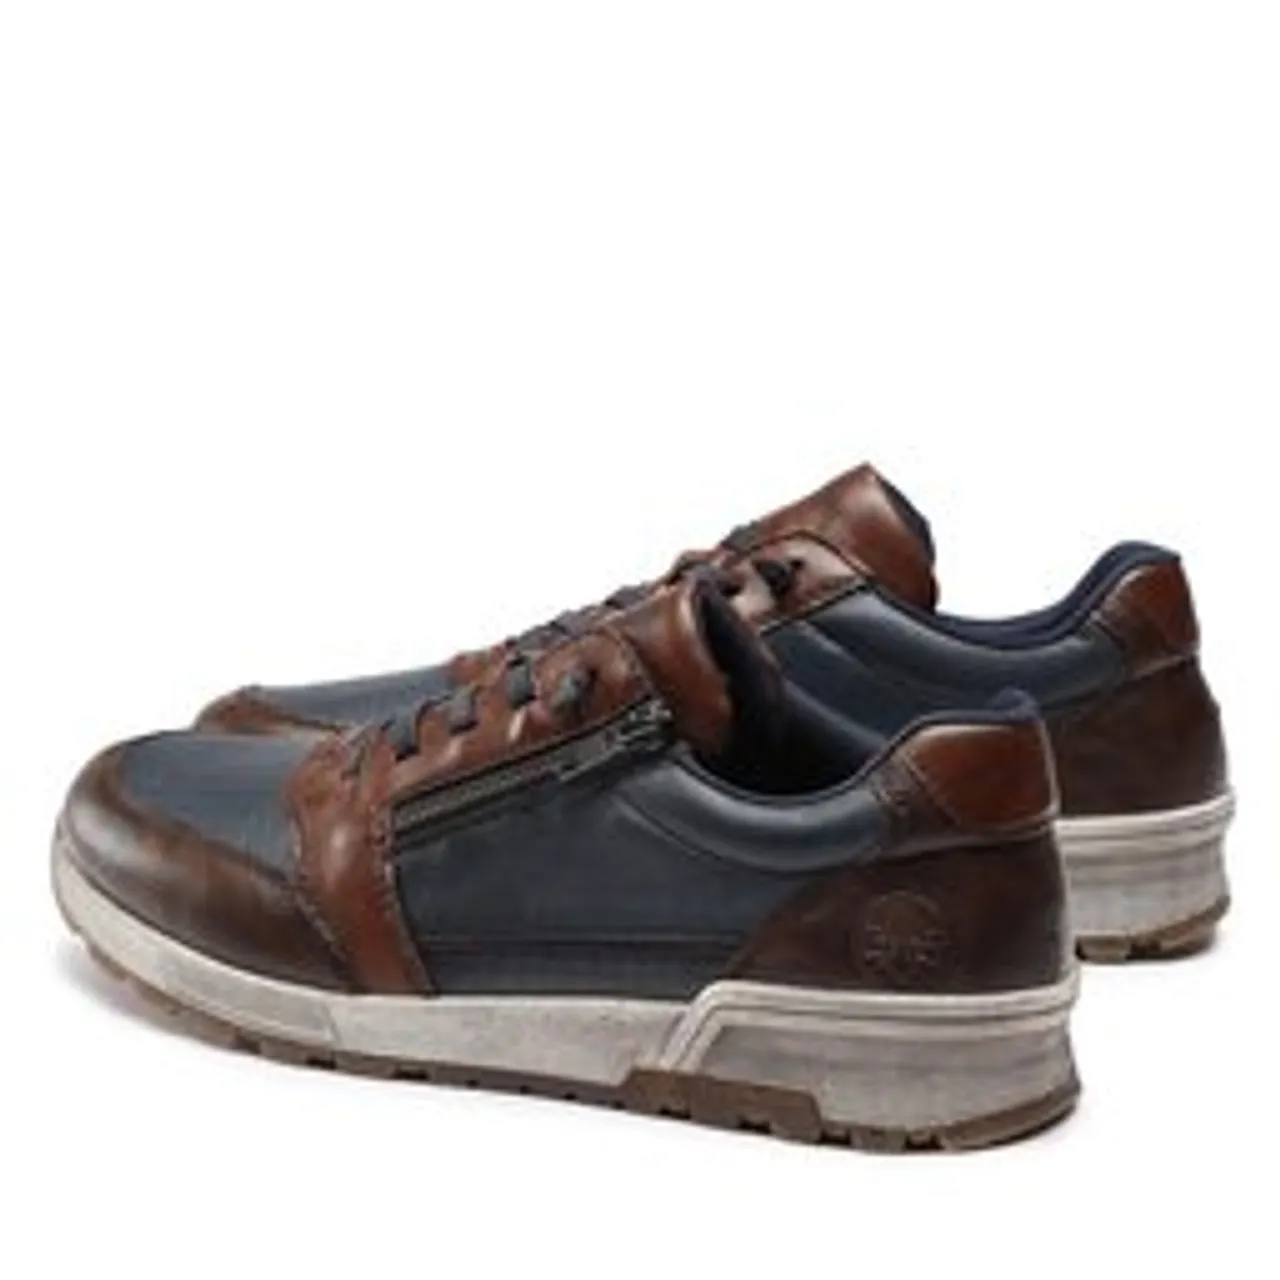 Sneakers Rieker 15163-14 Toffee / Navy / Wood 14